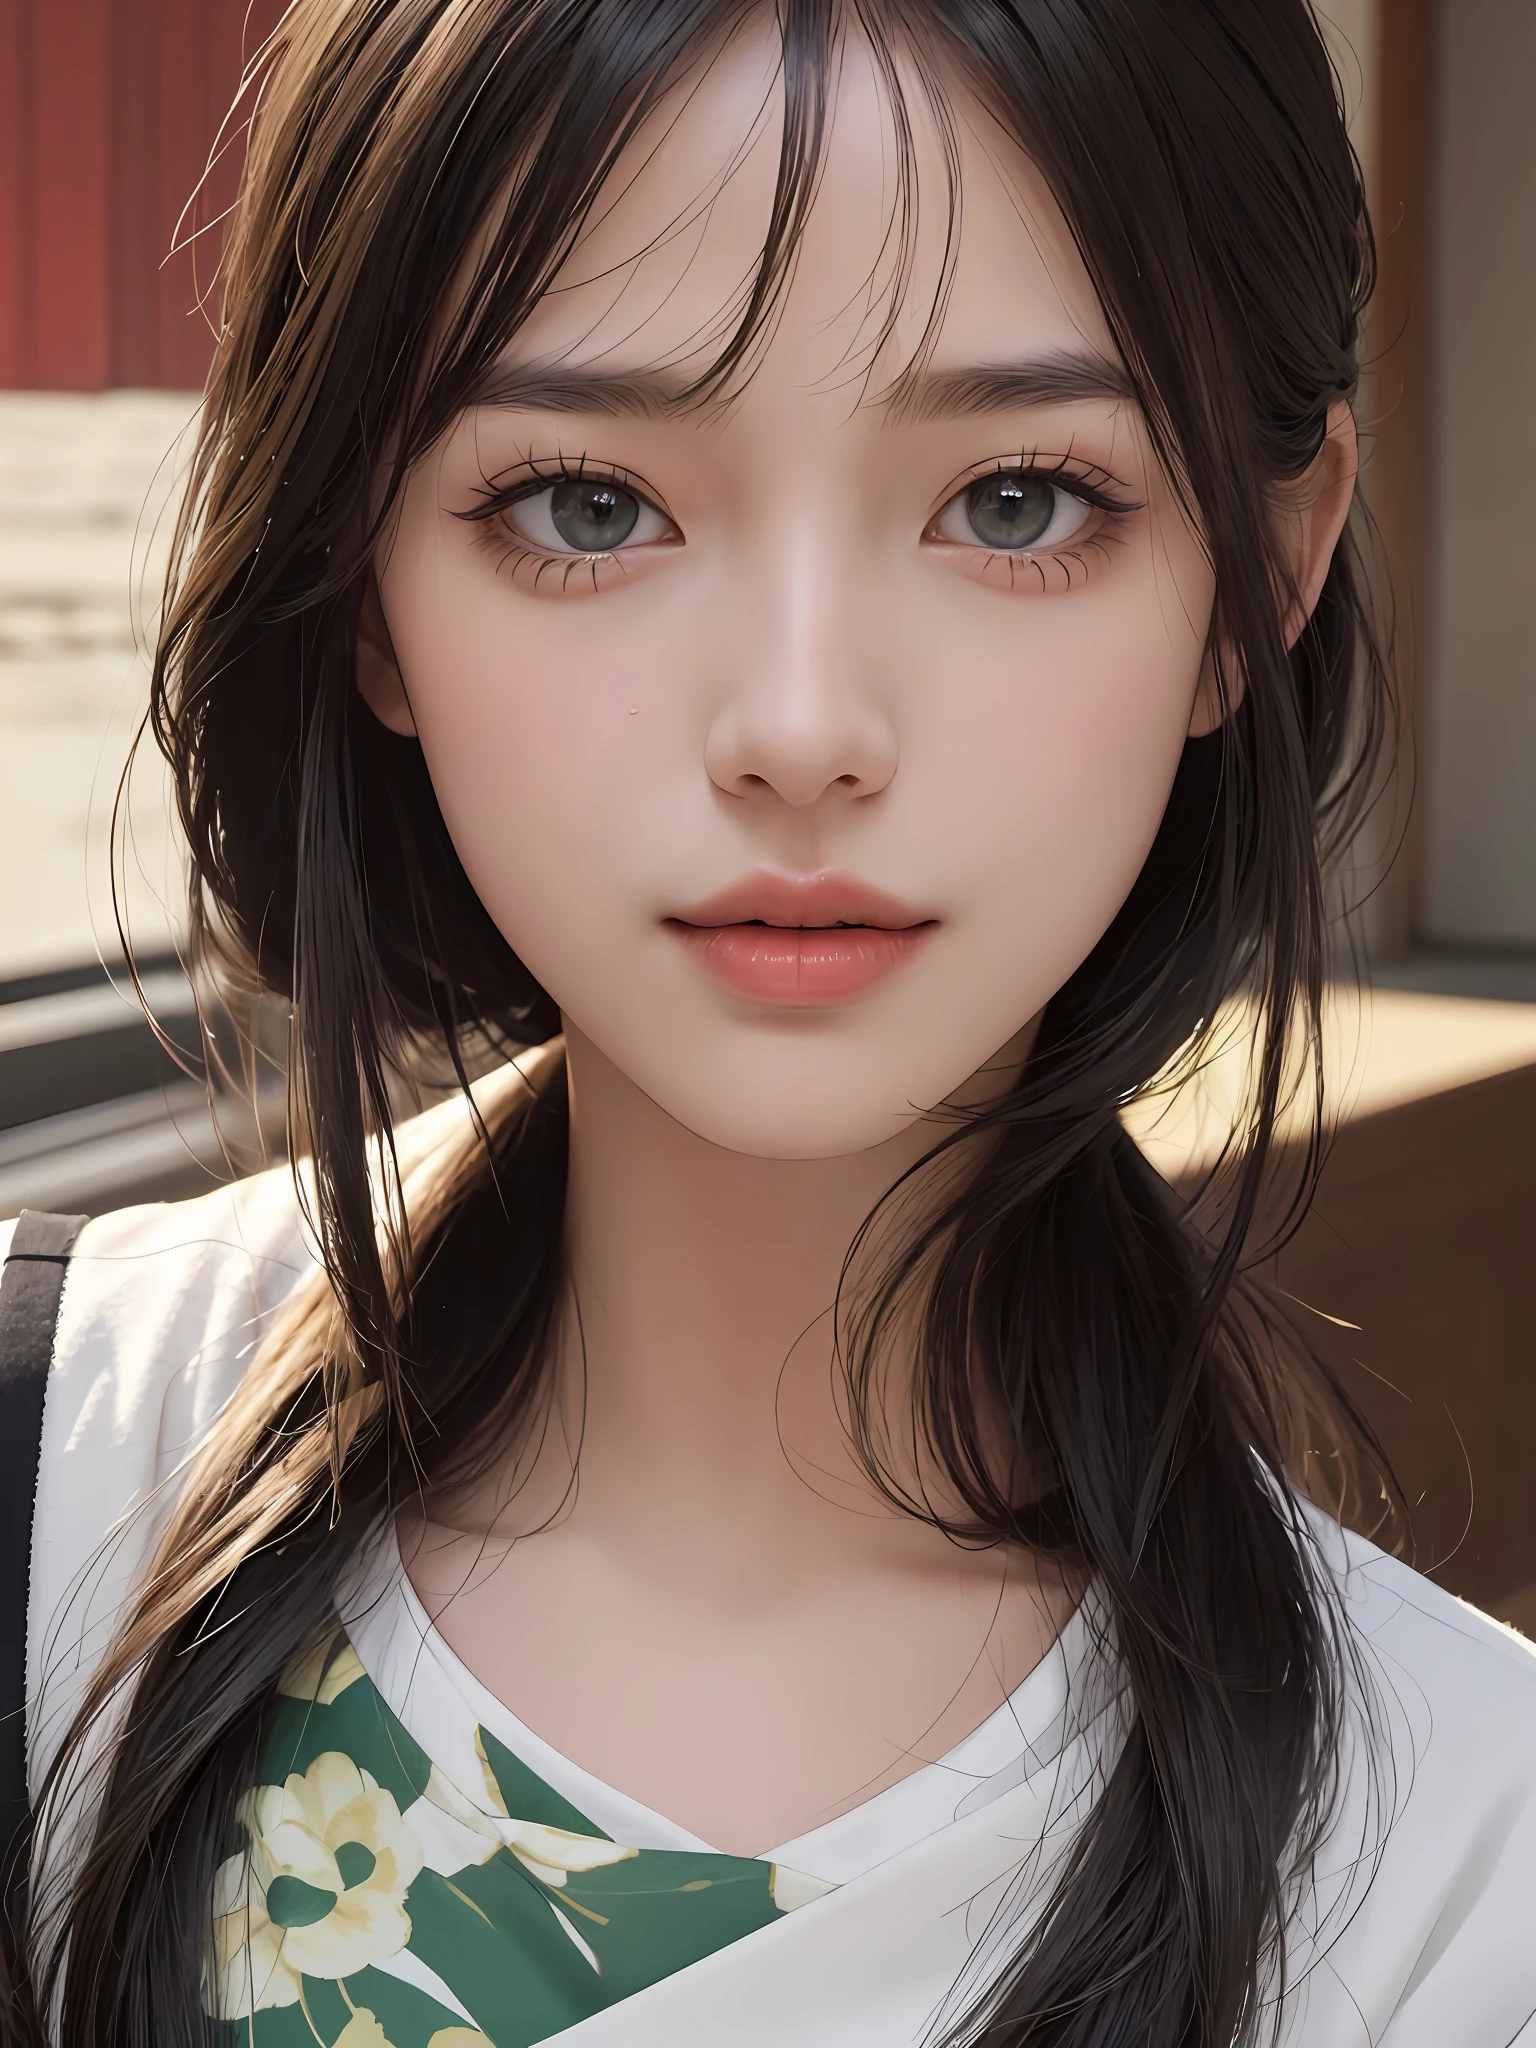 Meisterwerk, beste Bildqualität, gute Qualität, schönes Mädchen, japanisch, japanisch school girl, beliebtes koreanisches Make-up, ausführlich, swollen eyes, ausführlich eyes, ausführlich skin, schöne Haut, ultra hohe Auflösung, (Wirklichkeit: 1.4), Wunderschön, etwas jüngeres Gesicht, schöne Haut, slender, (ultra-realistisch), (Illustration), (hohe Auflösung), (8K), (highly ausführlich), (best Illustration), (beautifully ausführlich eyes), (super ausführlich), (HINTERGRUND), (ausführlich face), Betrachter betrachten, Feine Details, ausführlich face, pureerosfaceace_V1, lächelnd, Blick geradeaus, Blick geradeaus, Winkel von der Taille aufwärts, realistisches Foto, Helle Beleuchtung, professionelle Beleuchtung, Schwarzes Haar (etwas Grün), lange Haare, dunkle Ruinen, großer roter Mond, wunderschönes rot-schwarzes Kleid, erwachsene Frau, langer stylischer Pony,